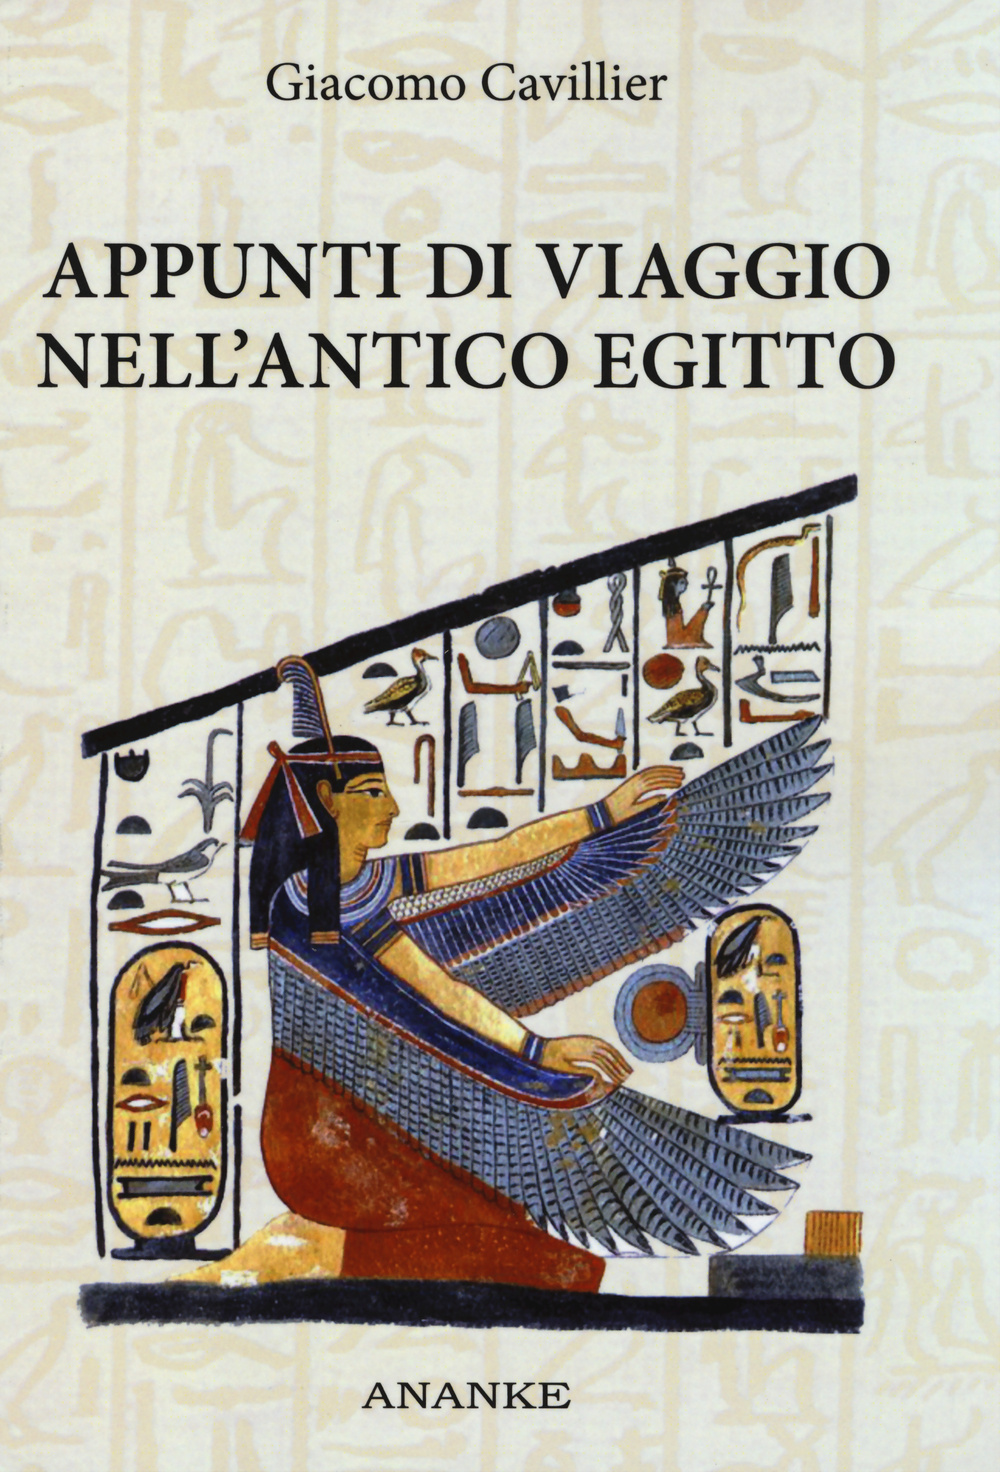 Appunti di viaggio nell'antico Egitto. Ediz. illustrata